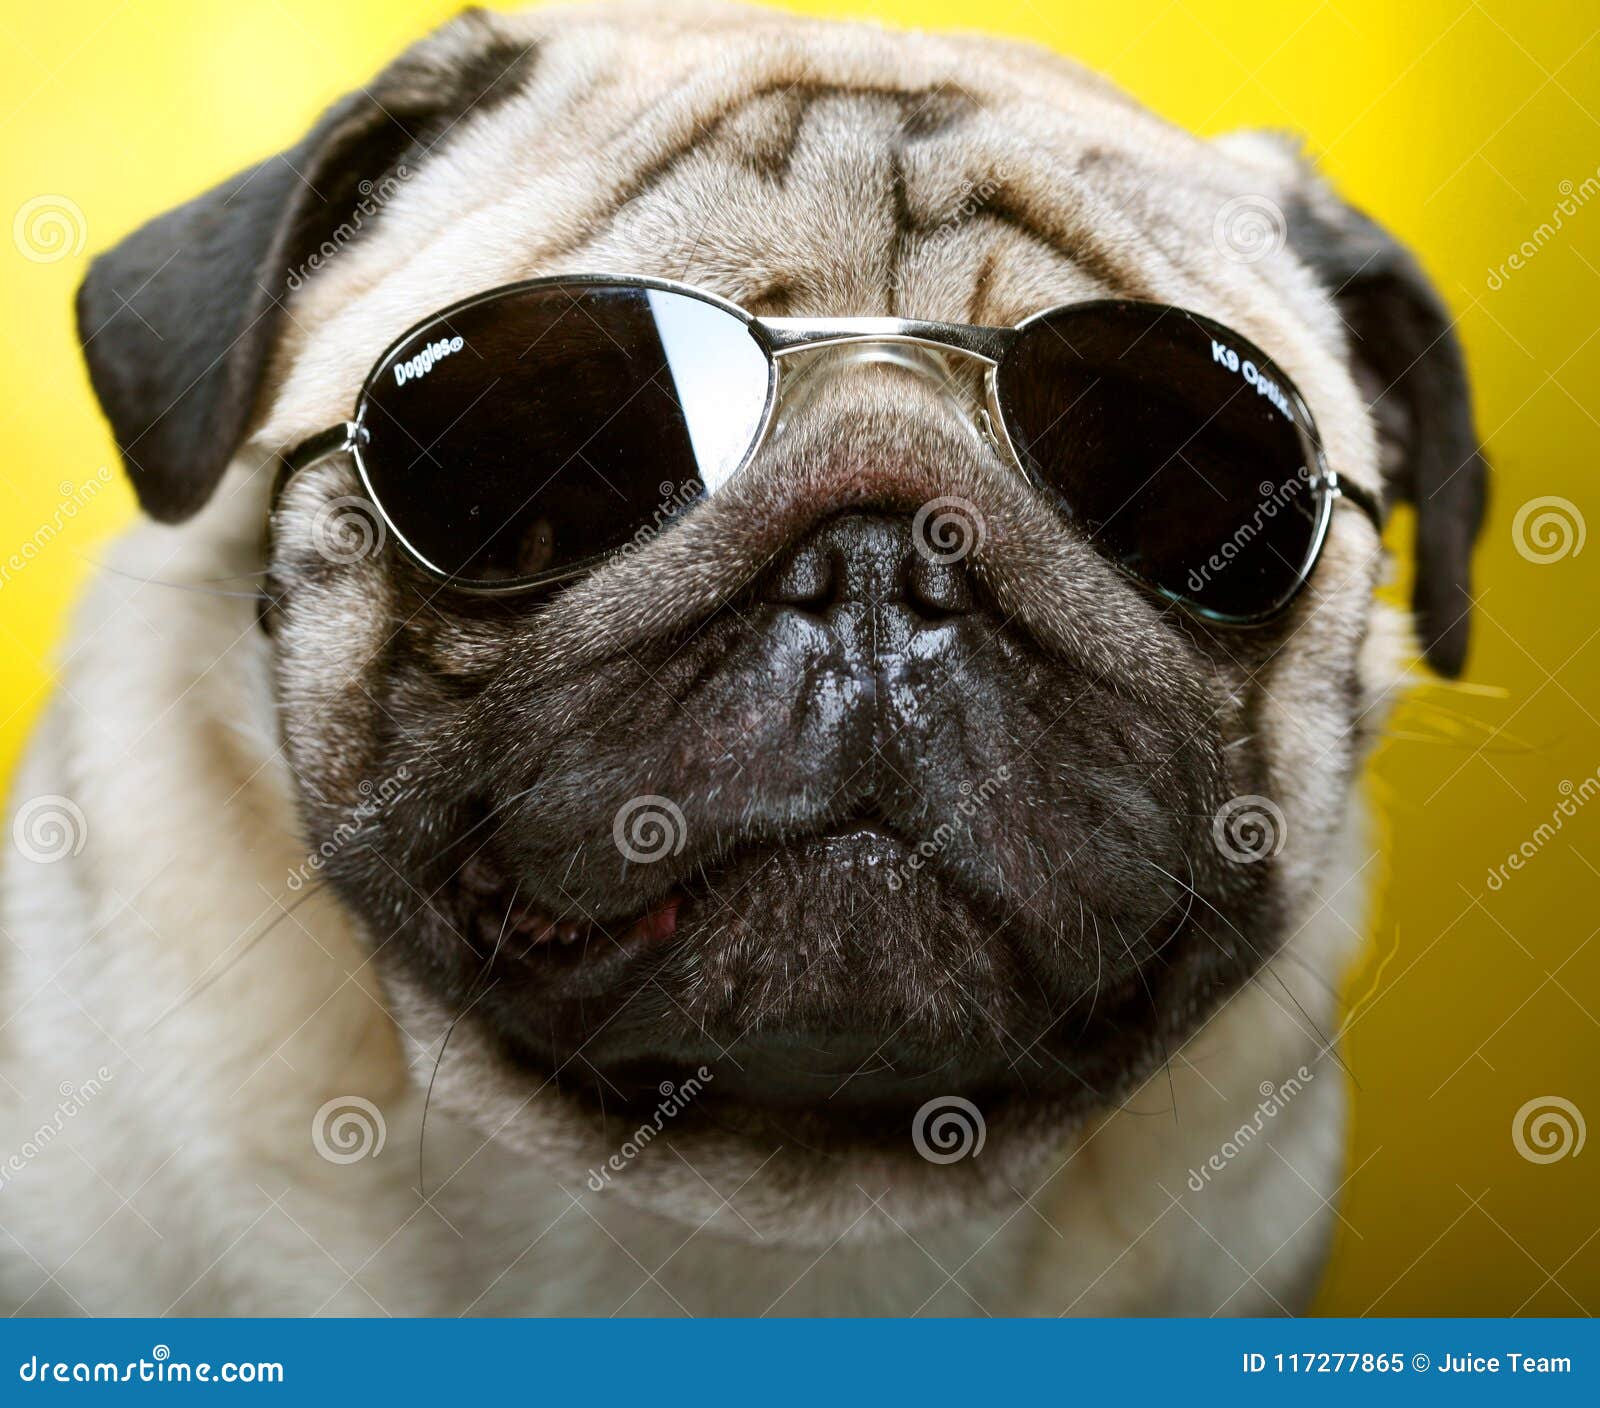 Pug with sunglasses. stock image. Image of eyes, doggy - 117277865